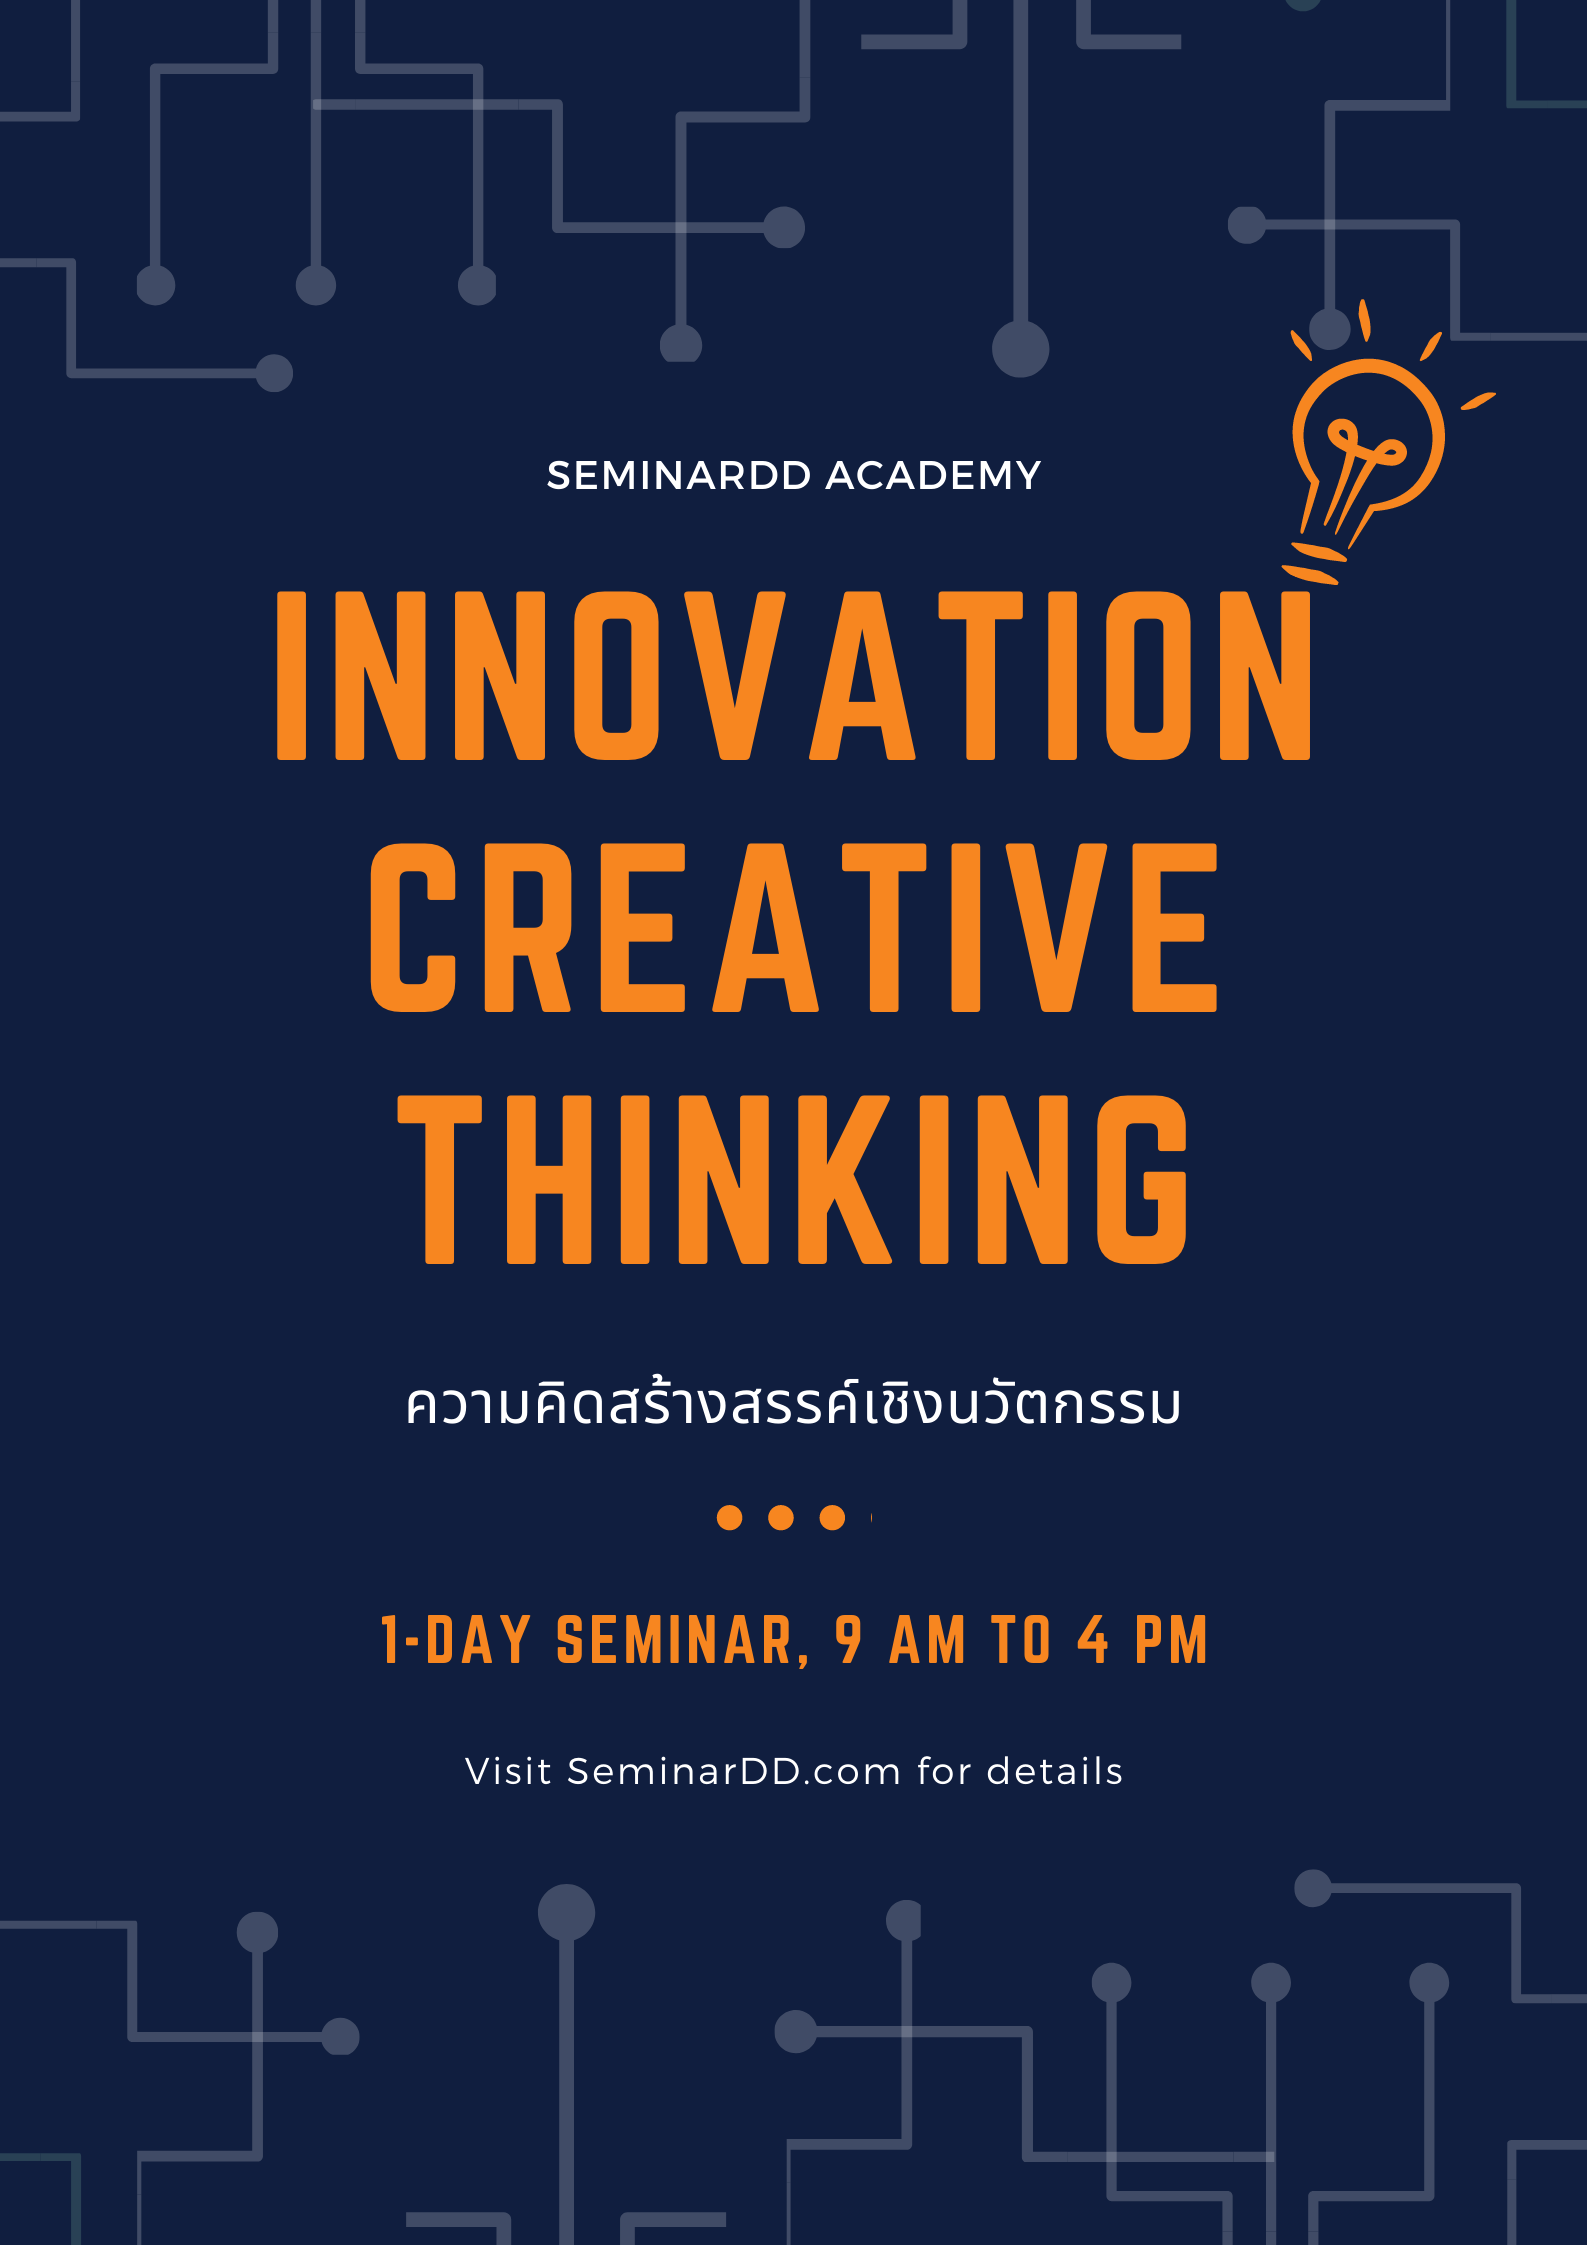 ความคิดสร้างสรรค์เชิงนวัตกรรม (Innovation Creative Thinking)